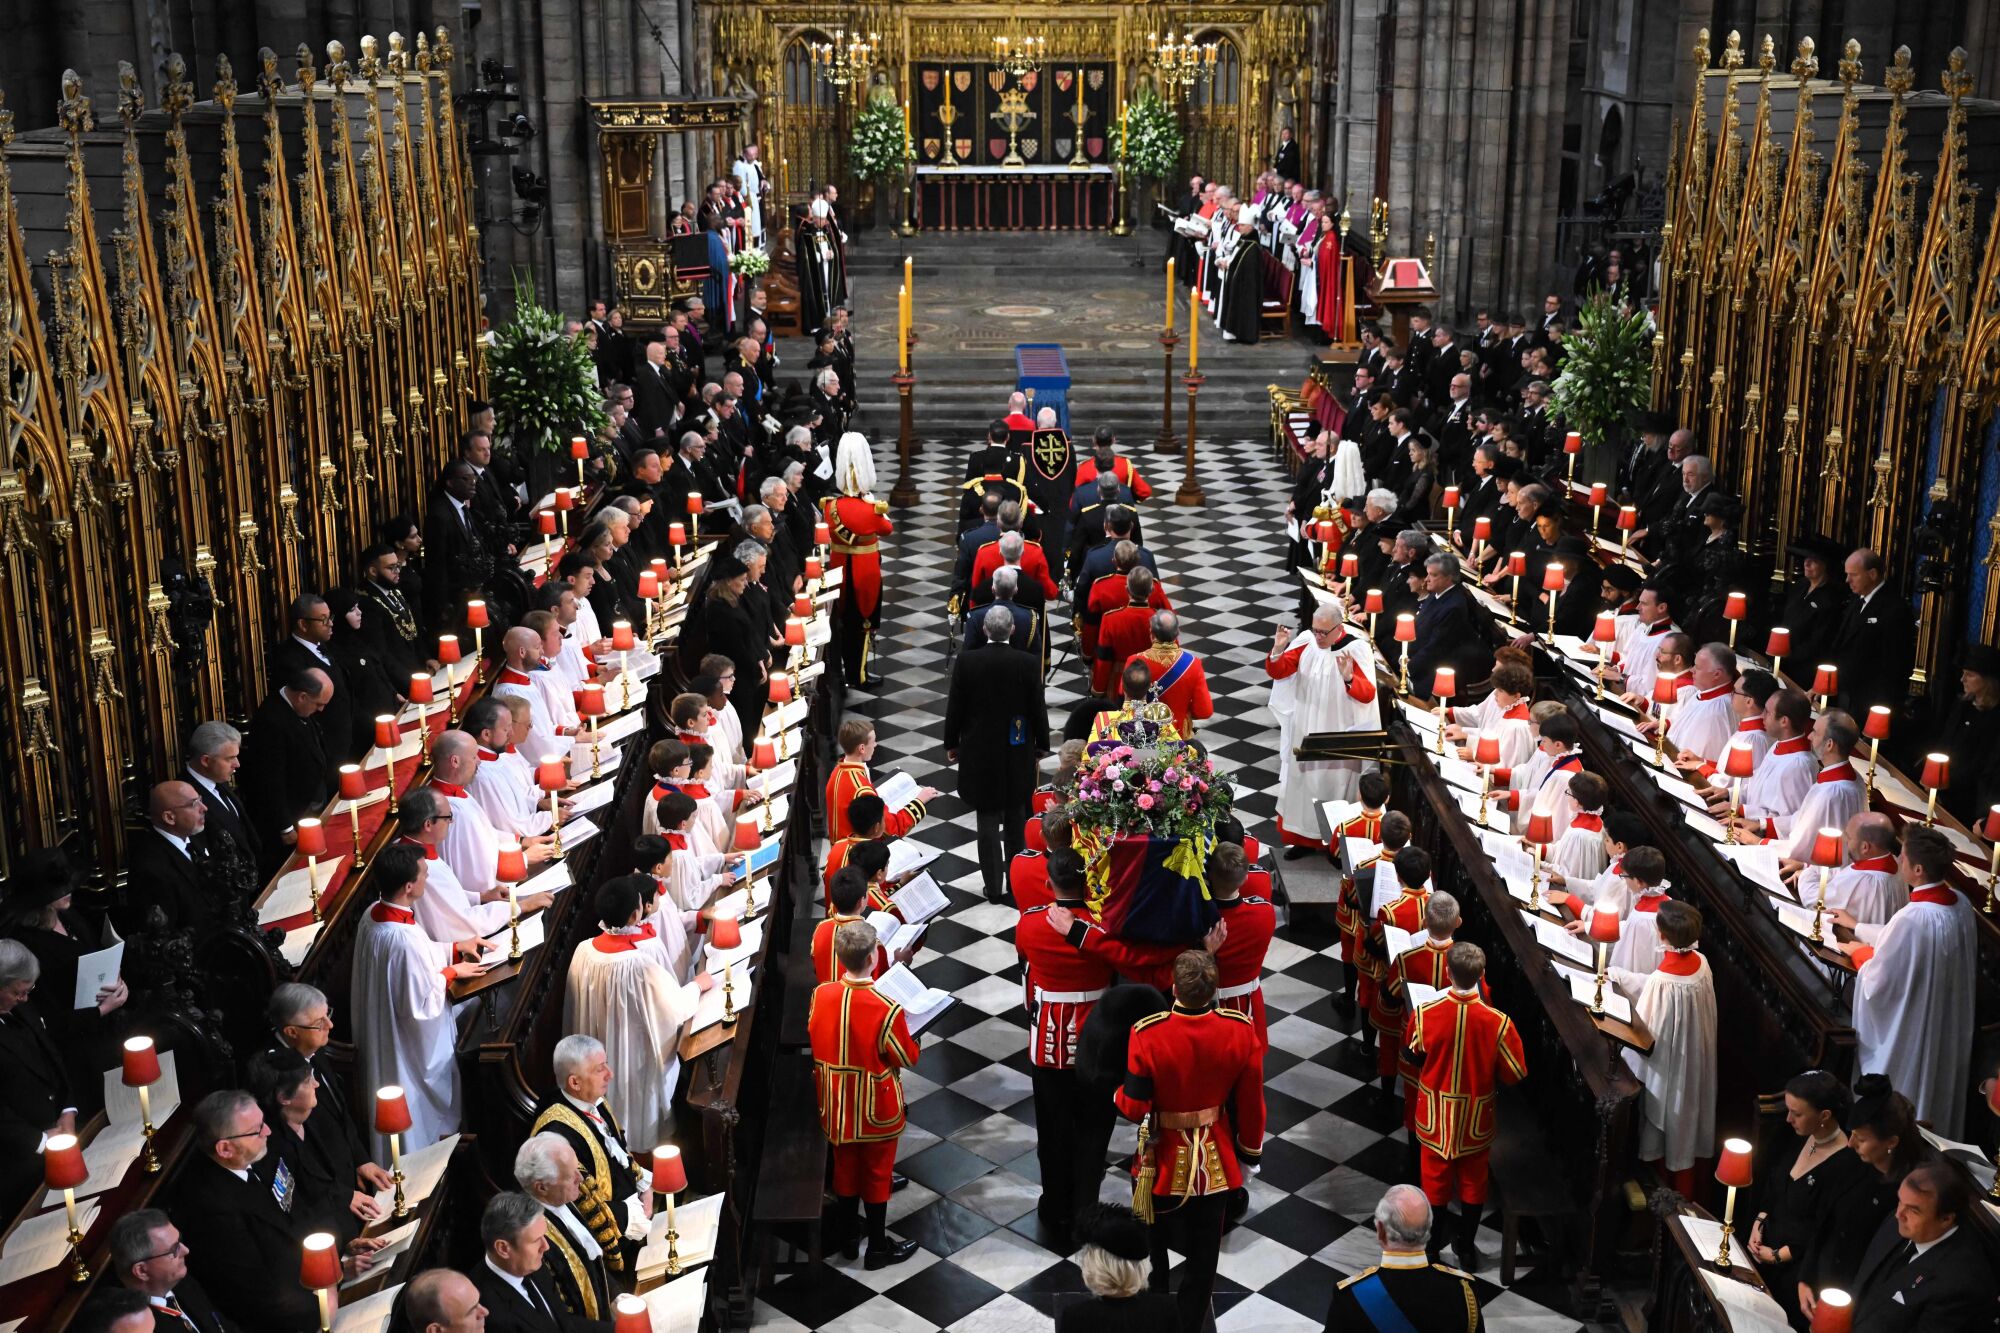 تابوت ملکه الیزابت دوم برای تشییع جنازه ایالتی او روز دوشنبه در کلیسای وست مینستر لندن می رسد.